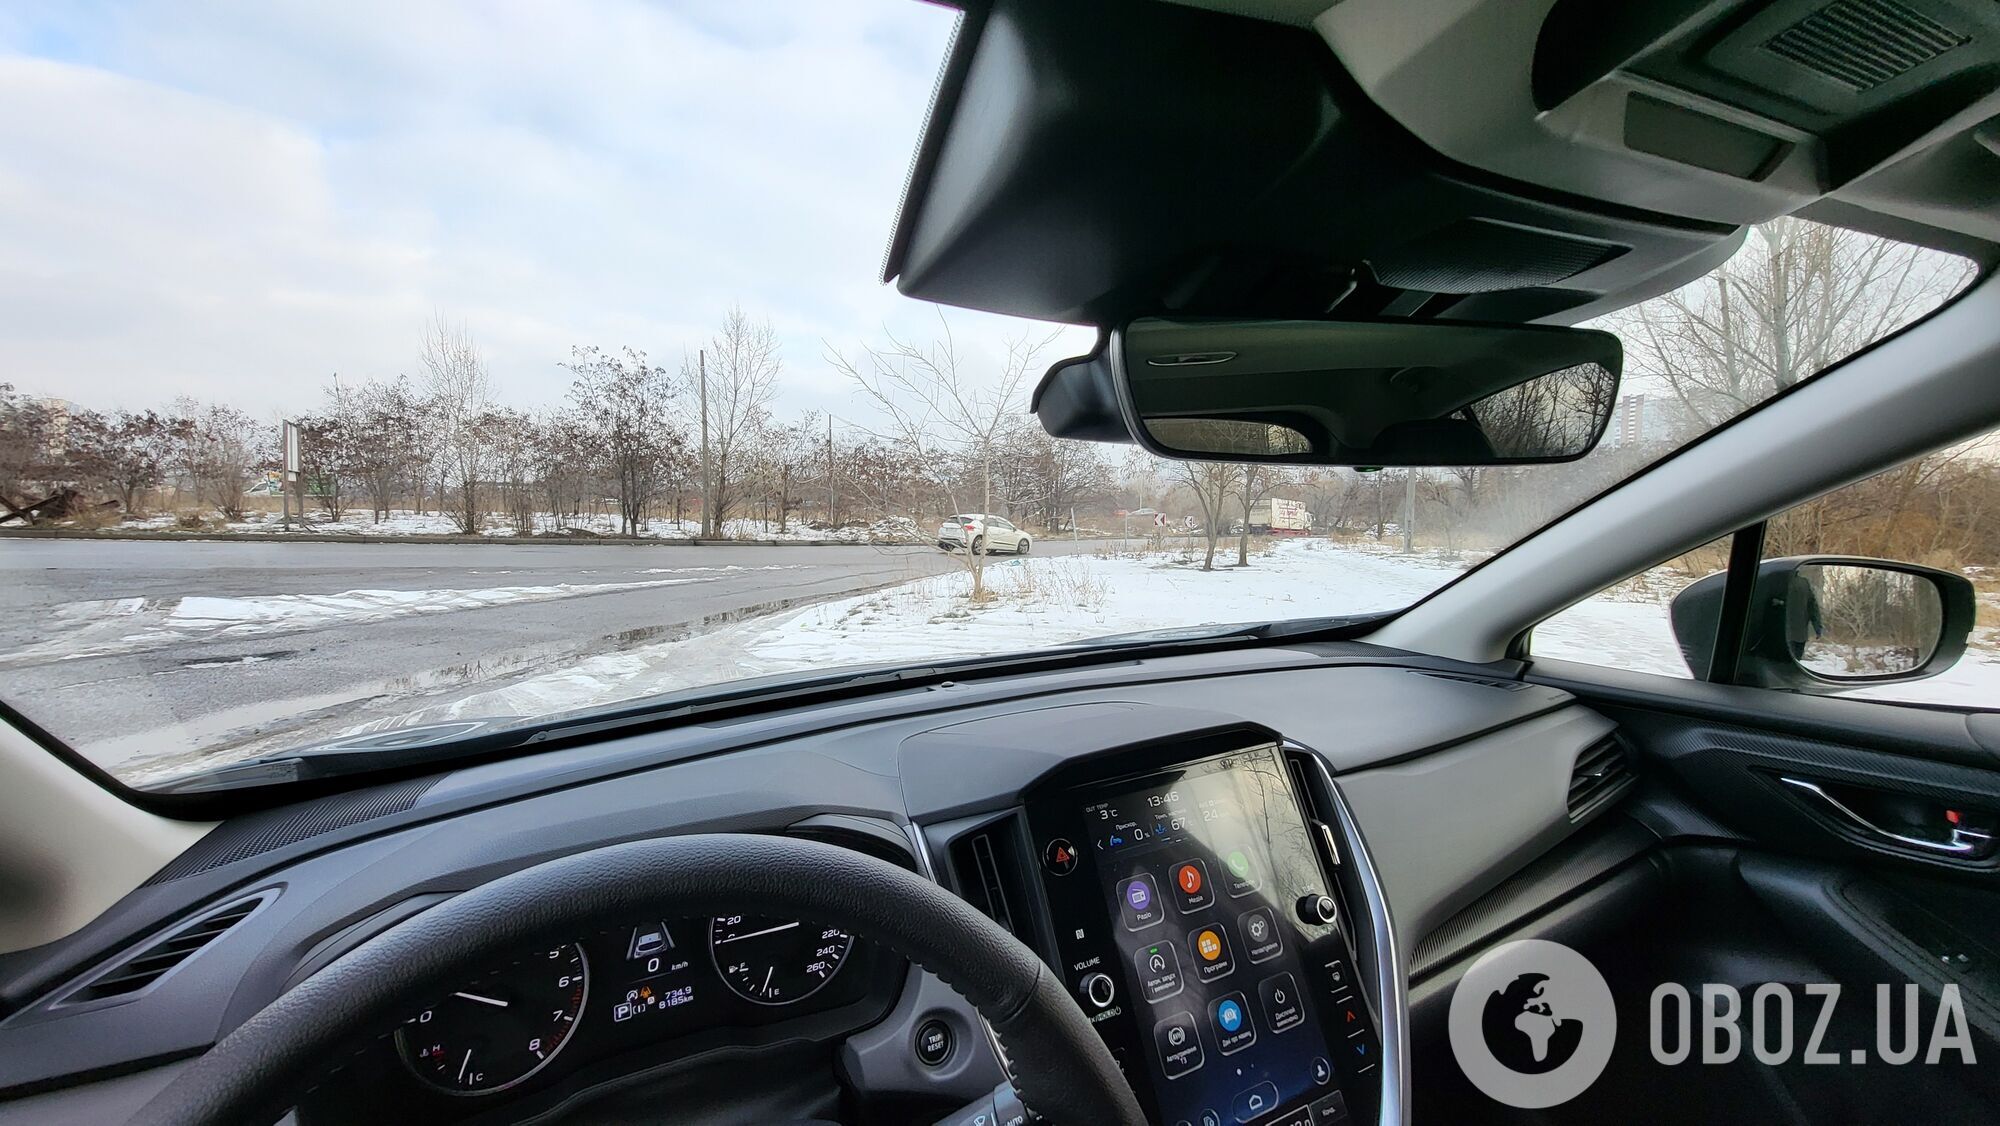 Практическая элегантность и безопасность: как выглядит новый Subaru Crosstrek и в чем его изюминка